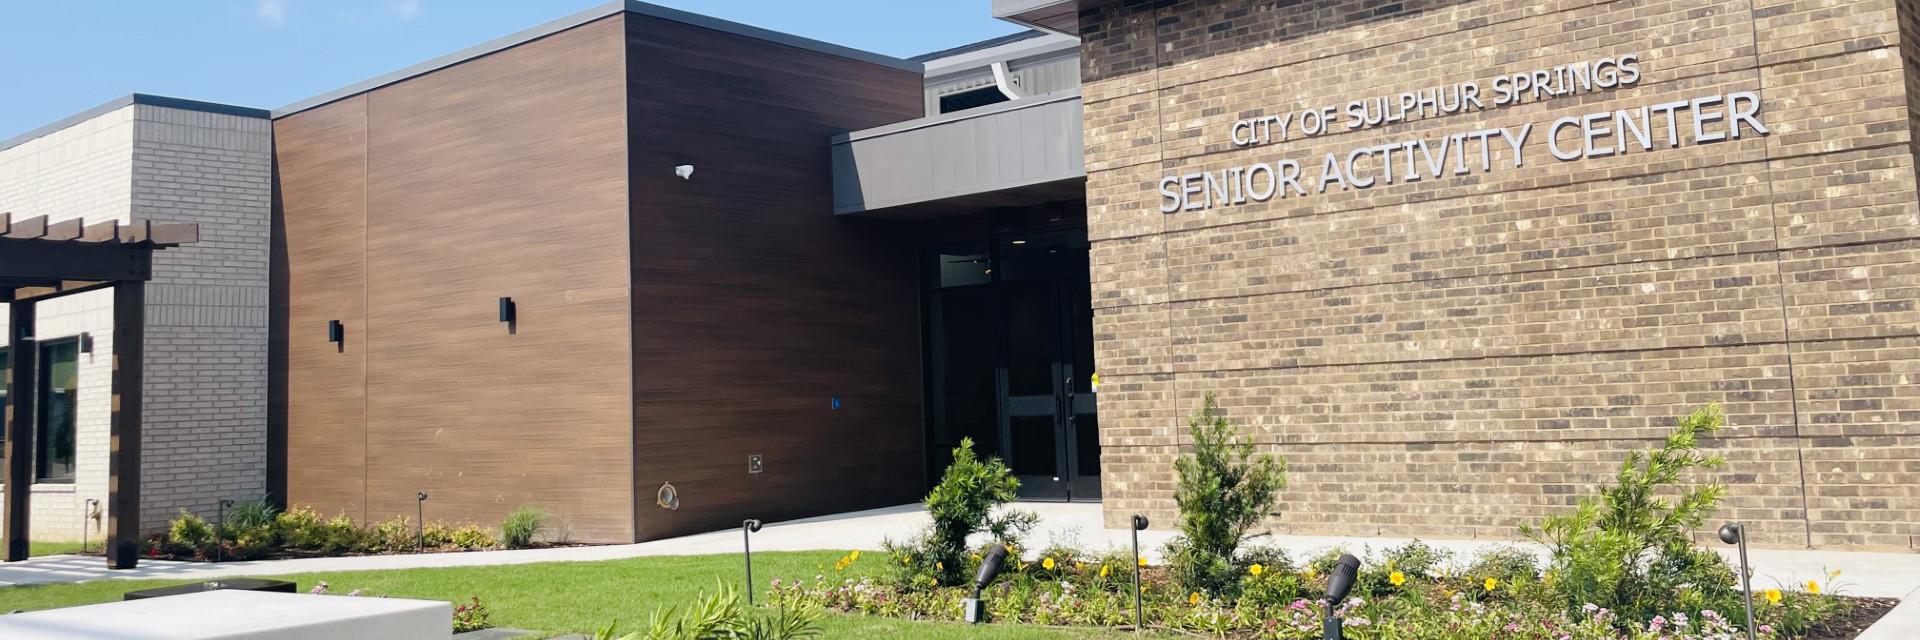 Sulphur Springs opens Senior Citizens Center